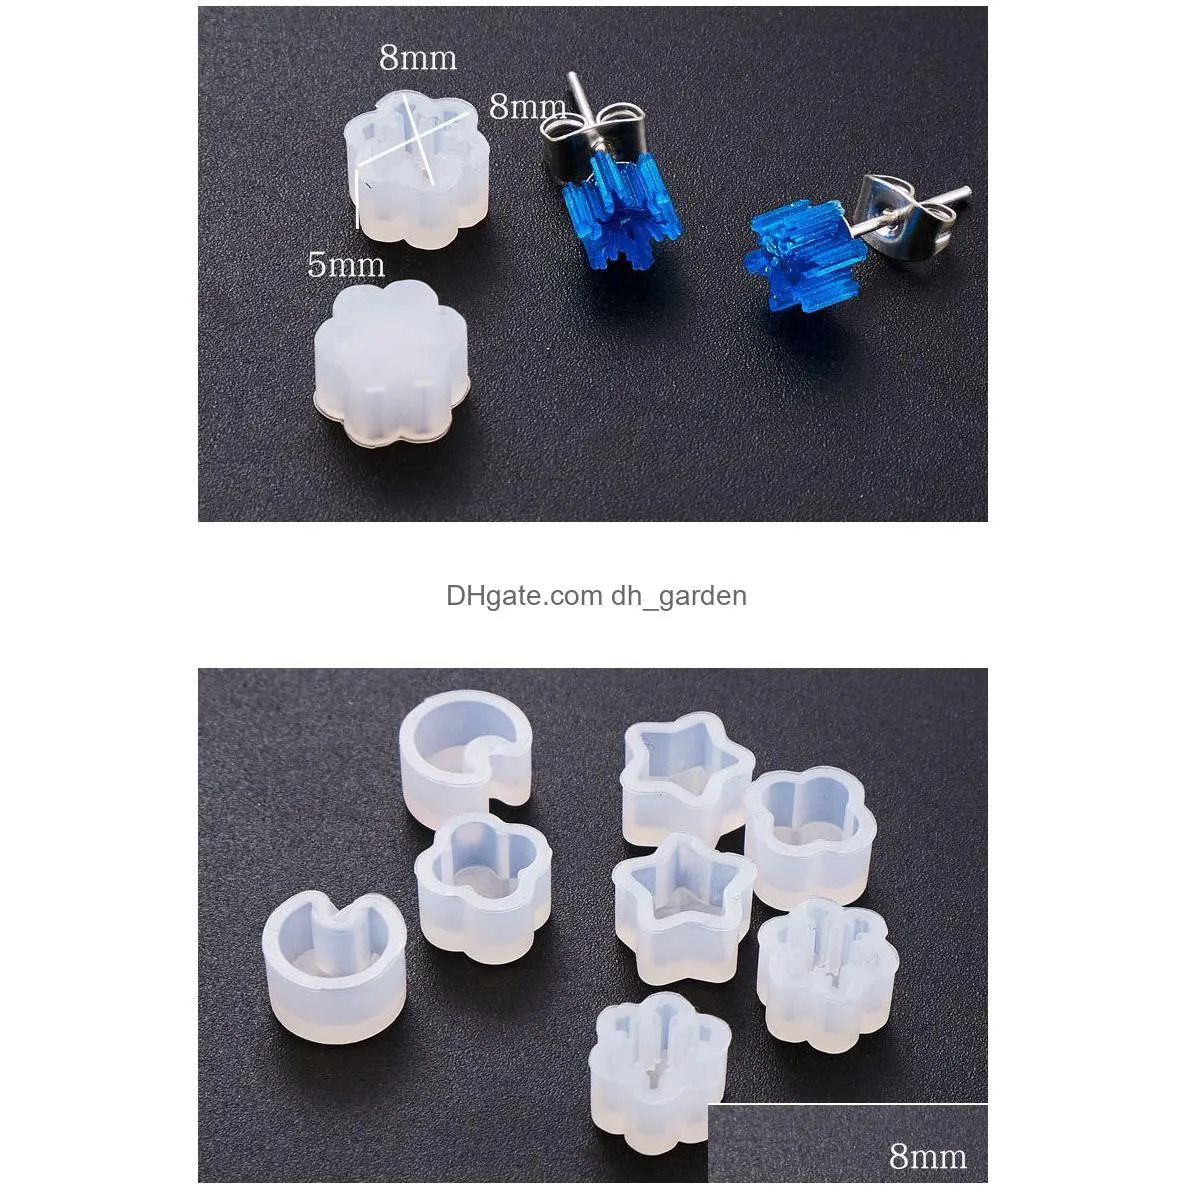 Molds Mini Stud Earrings Sile Mold Crystal Epoxy Handmade Star Flower Shape Earring Pendant Ear Hook Diy Resin Jewelry Drop Dhgarden Dhkdo